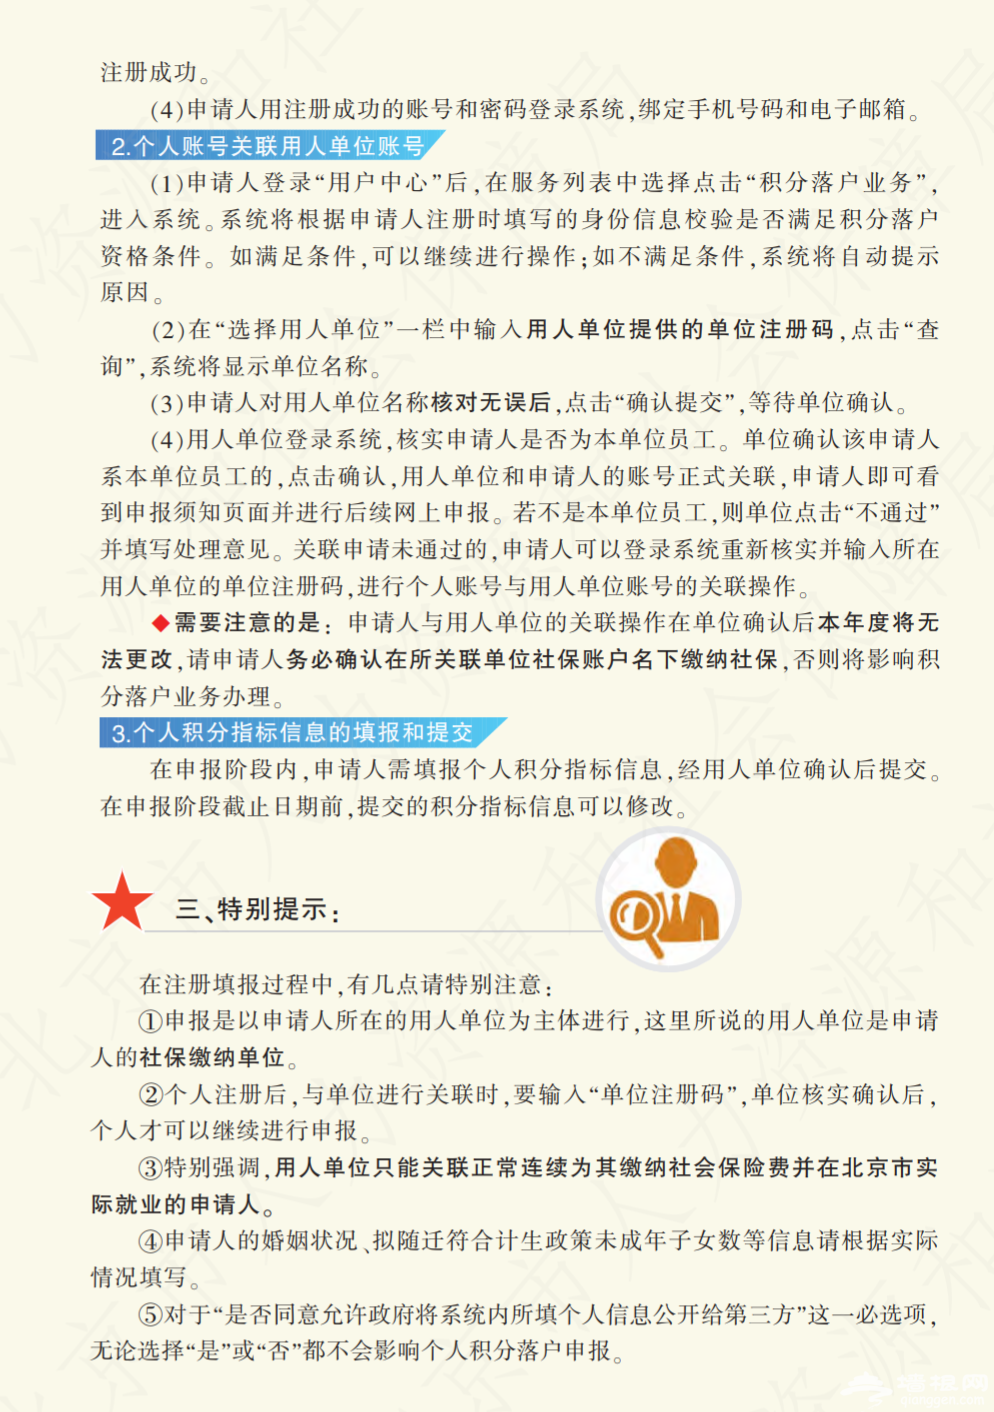 北京积分落户网上办理流程(单位注册+个人注册)[墙根网]